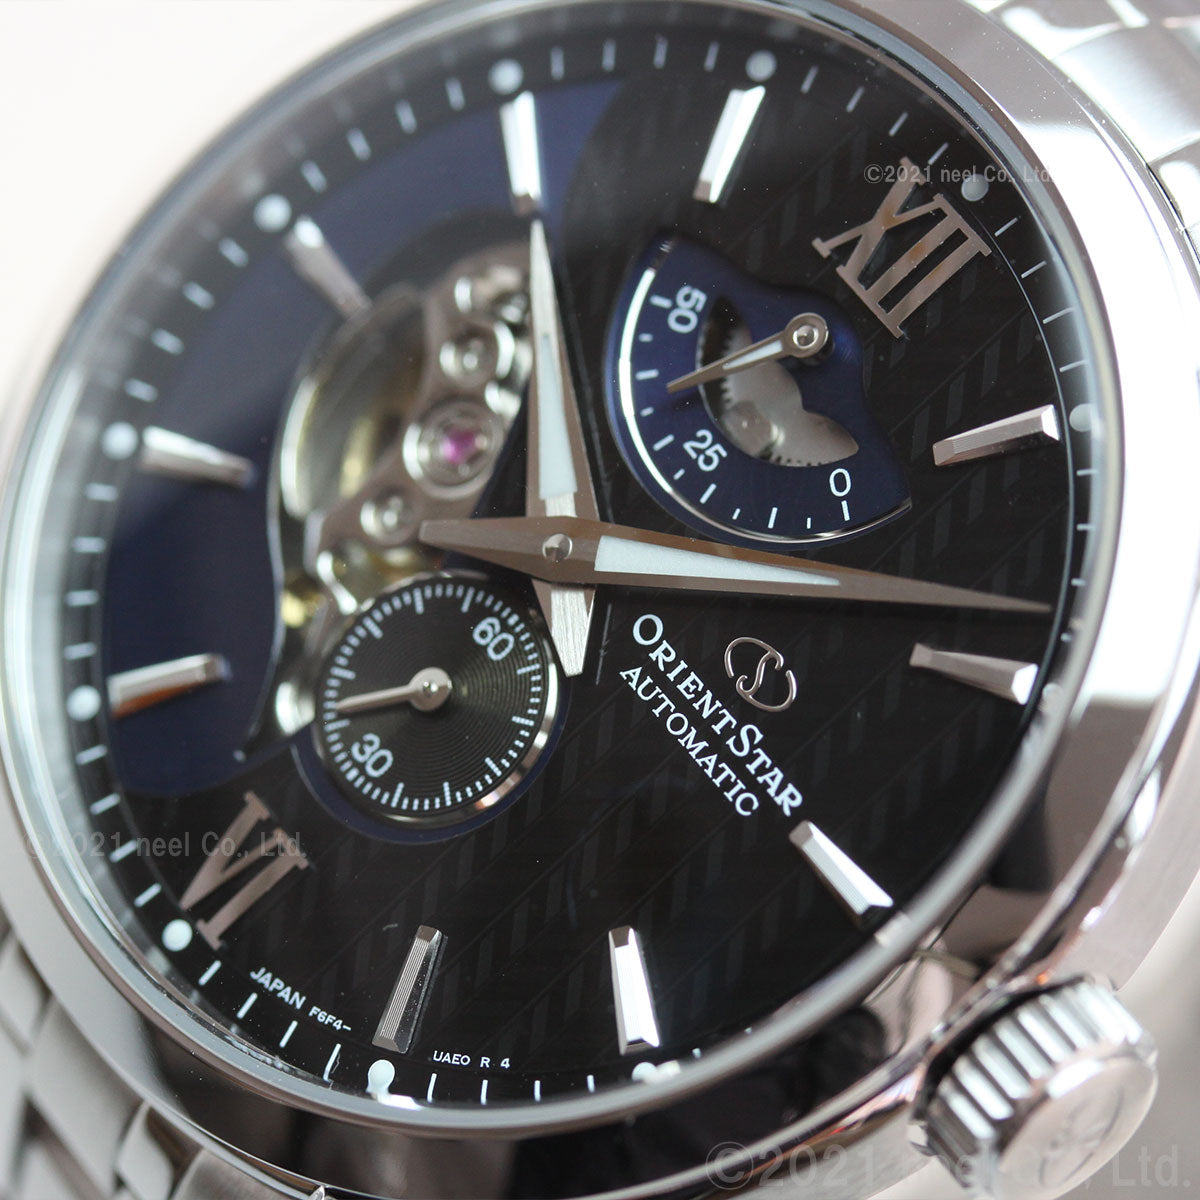 オリエントスター ORIENT STAR 腕時計 メンズ 自動巻き コンテンポラリー CONTEMPORALY レイヤードスケルトン RK-AV0B03B